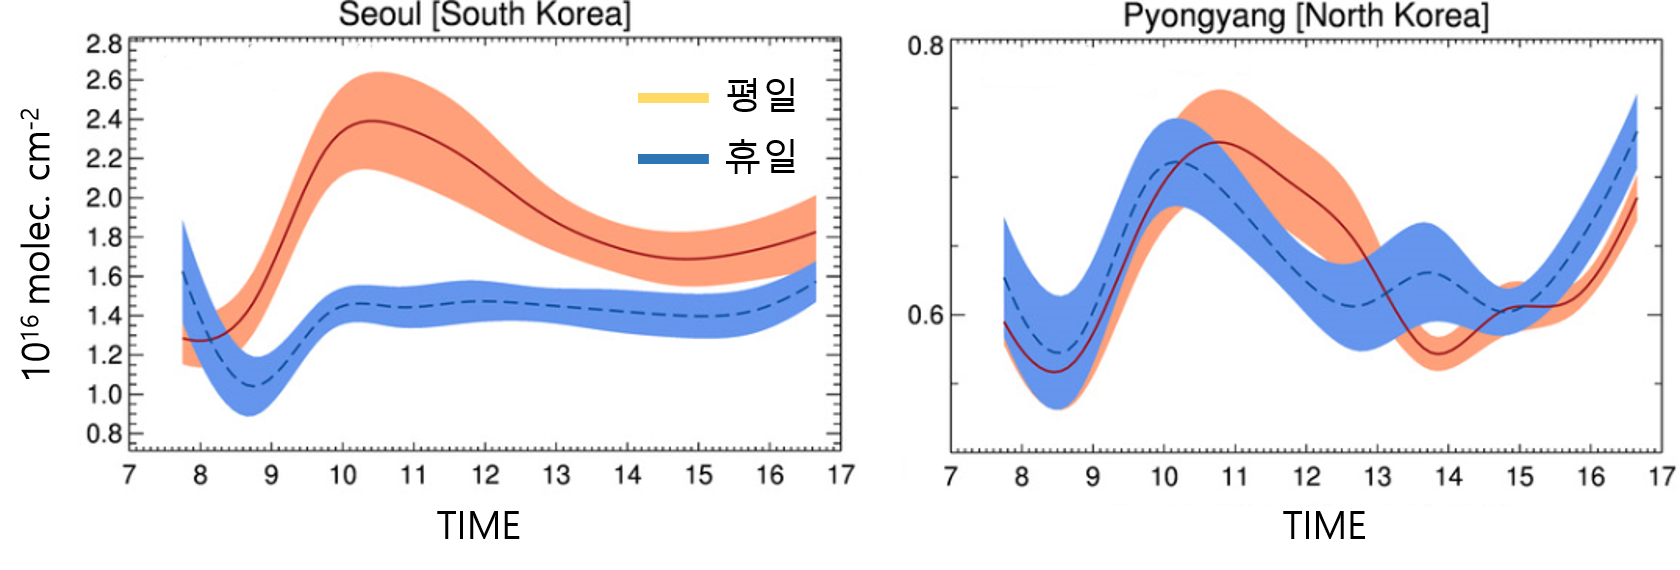 서울과 평양의 이산화질소 농도 . 서울은 휴일의 농도가 낮은데 비해 평양은 평일과 휴일의 농도 변화가 거의 없다. 국립환경과학원